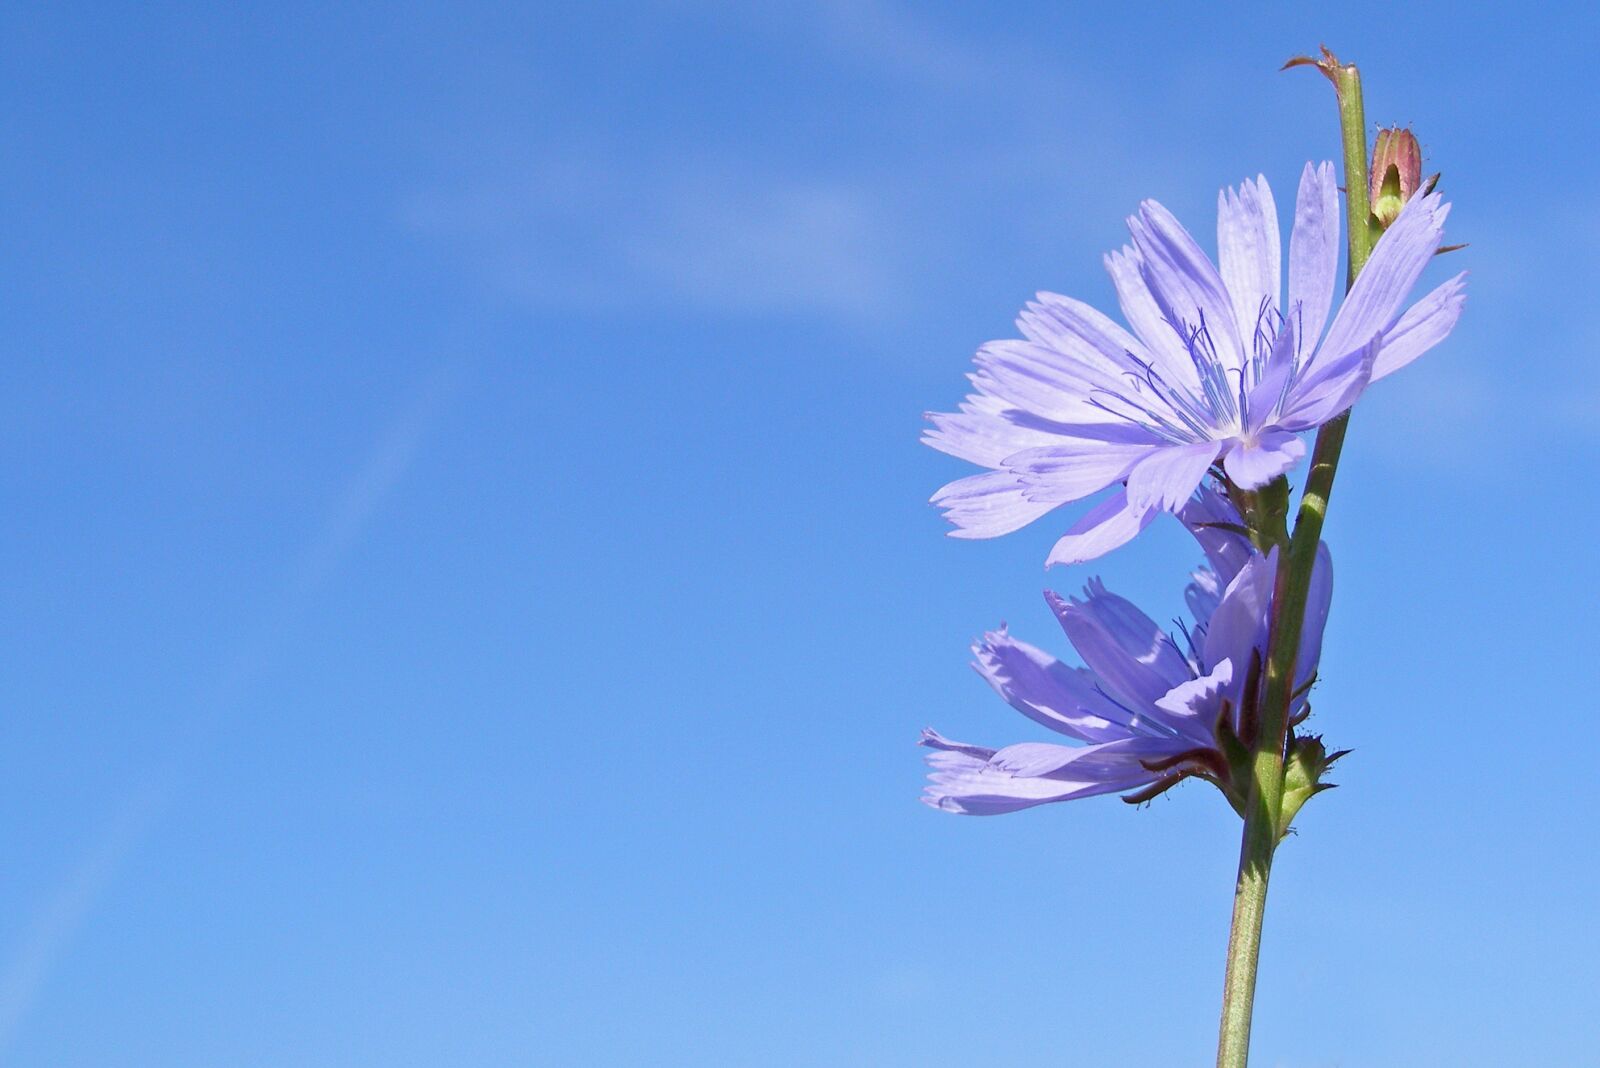 Olympus SP500UZ sample photo. Chicory, flower, blue photography